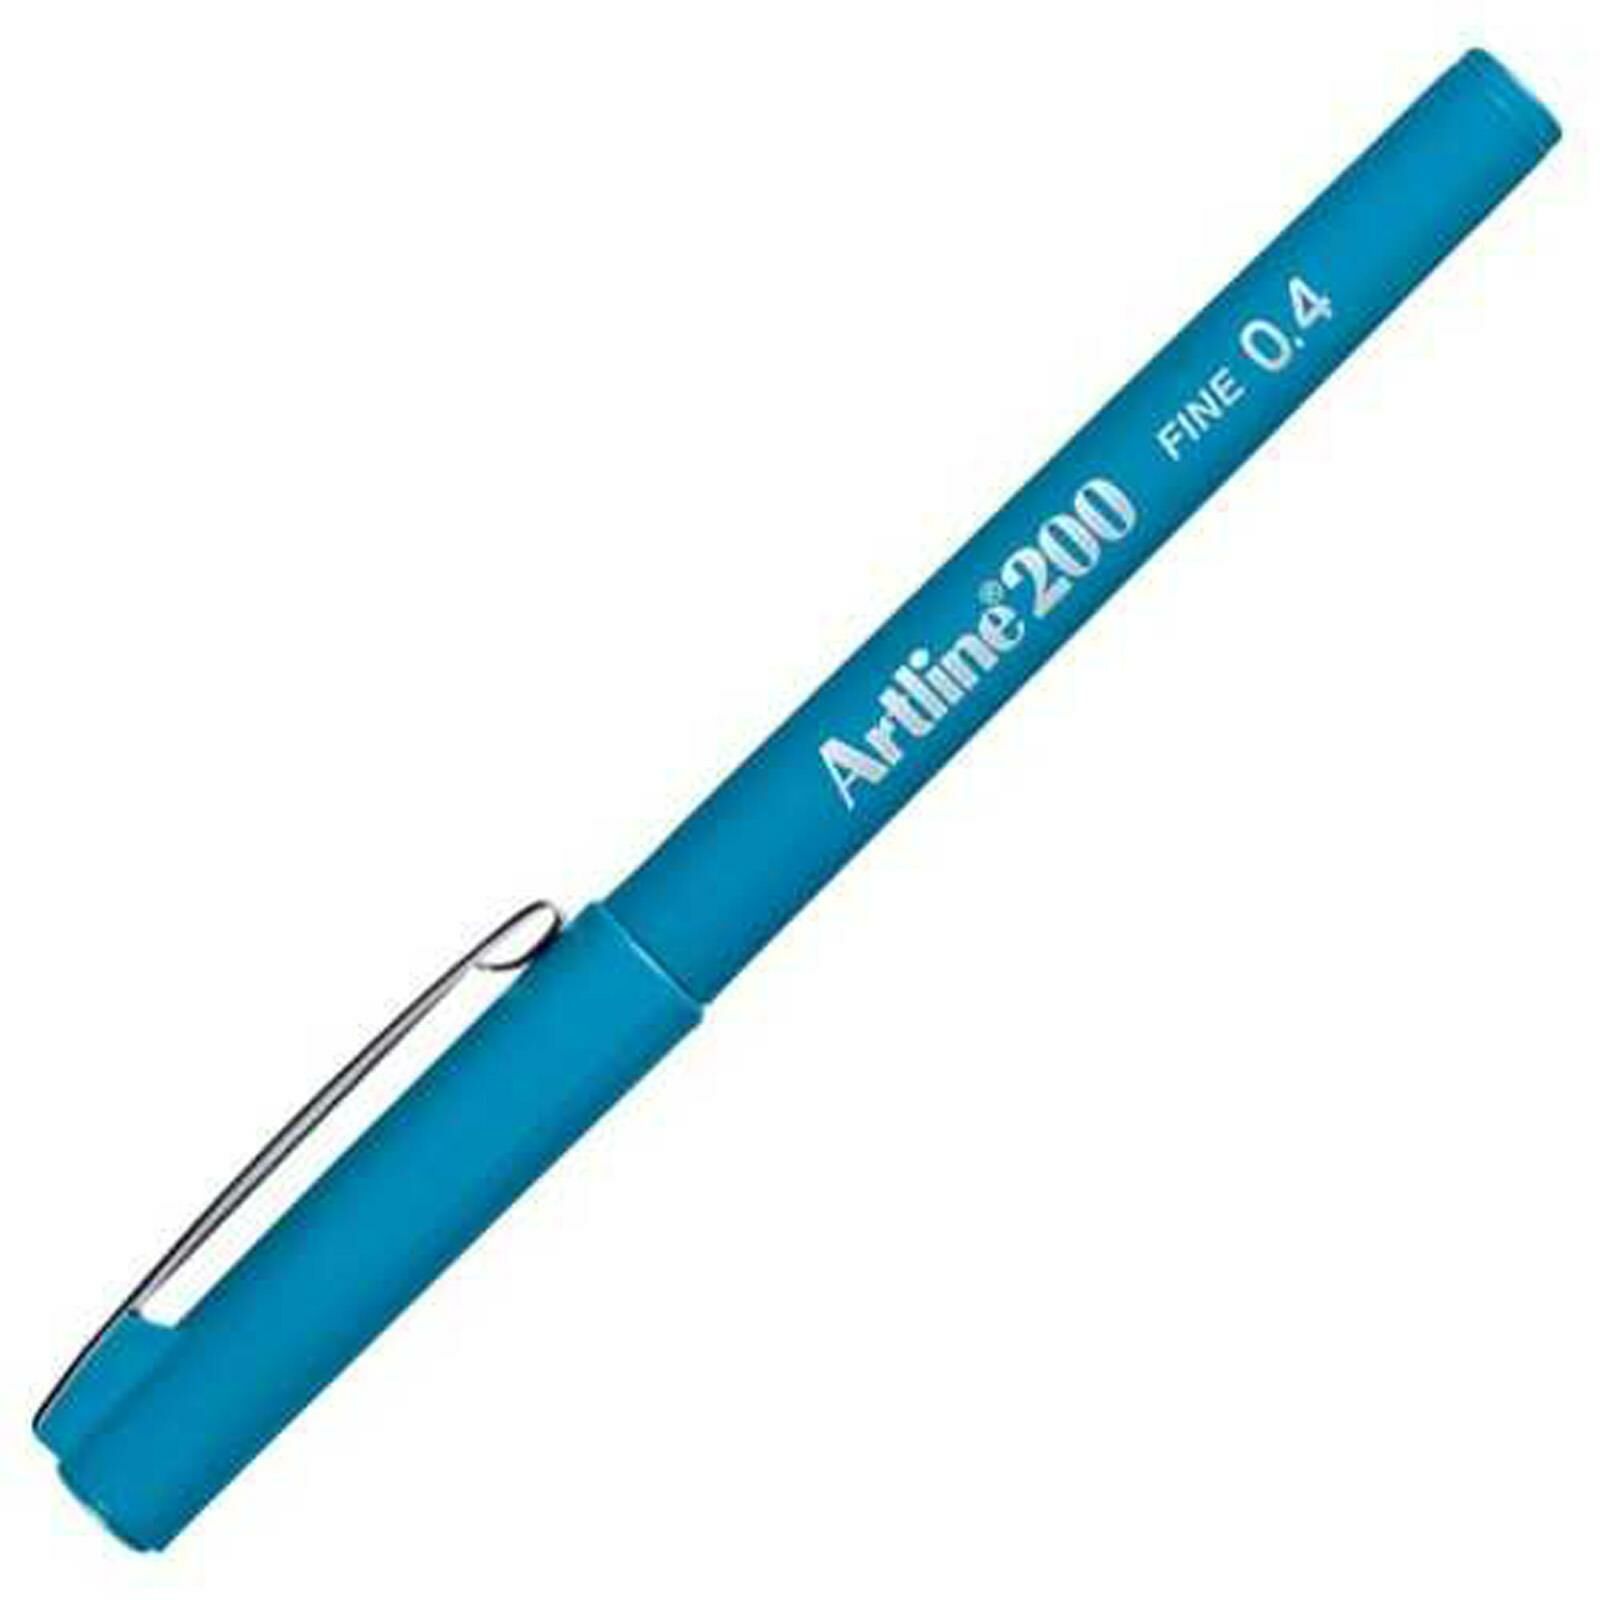 Artline Fineliner Kalem Açıık Mavi 0,4-200N (1 adet)